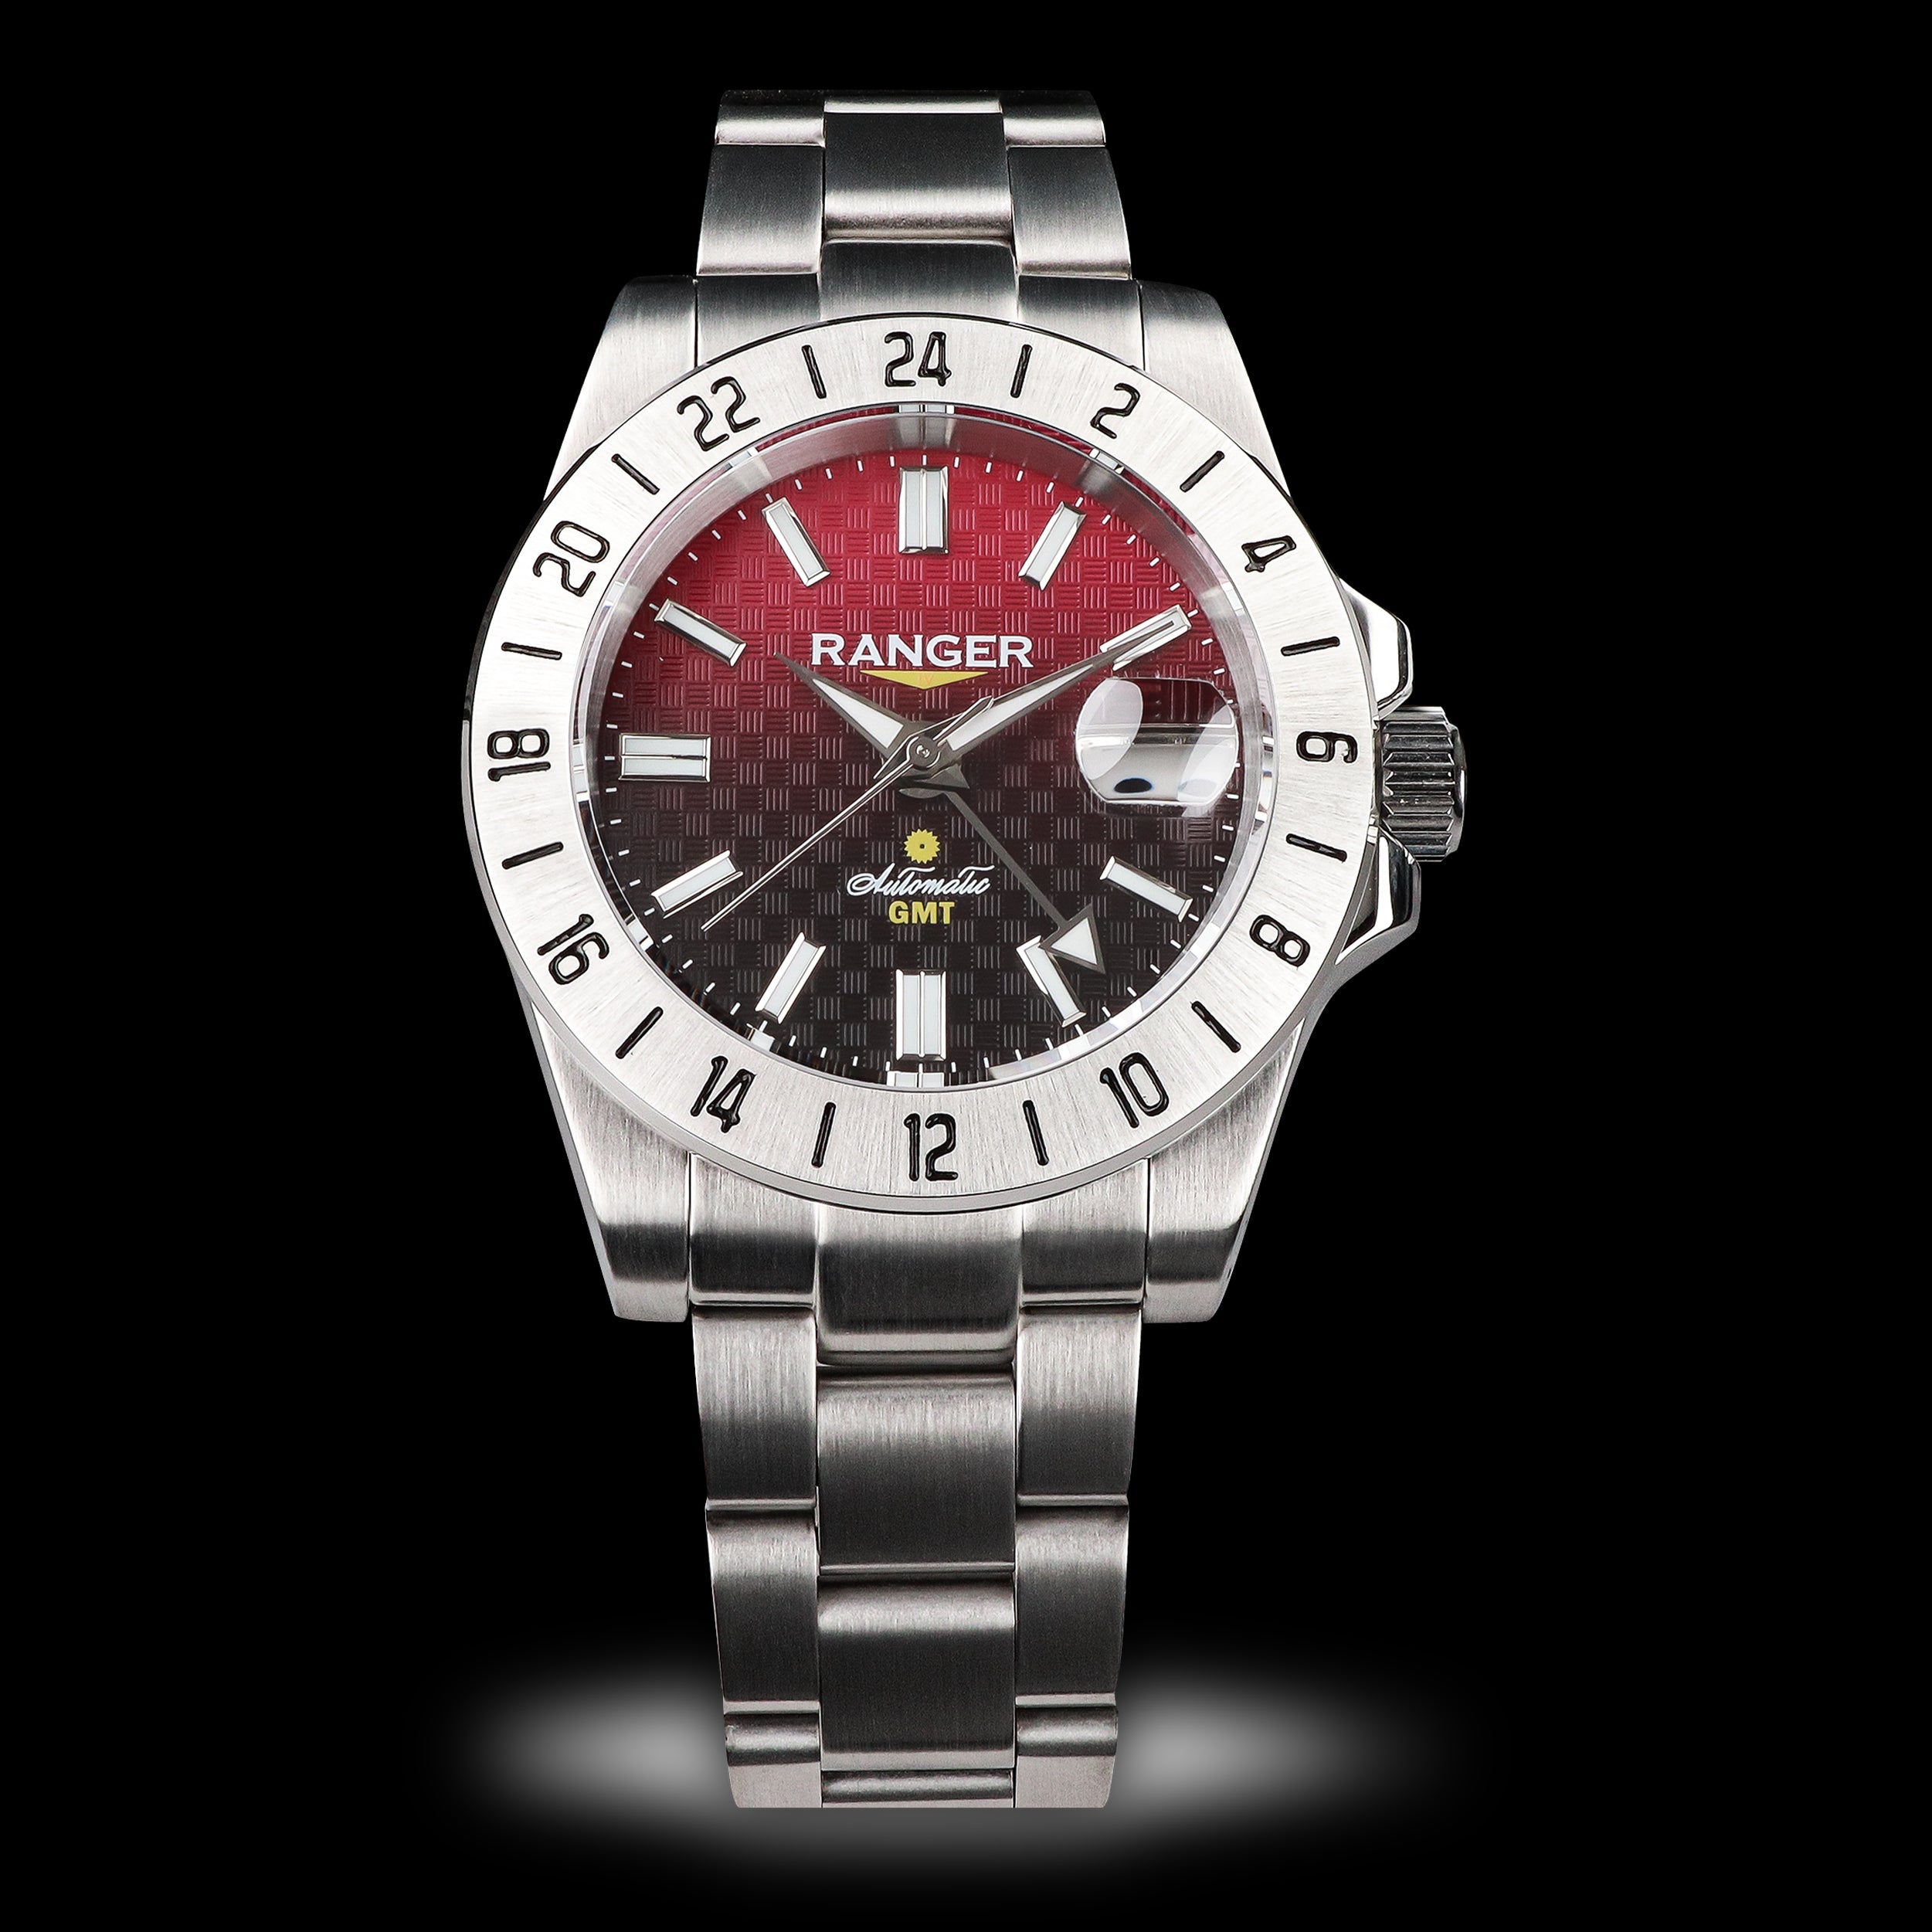 すべての腕時計 – Wancher Watch Japan